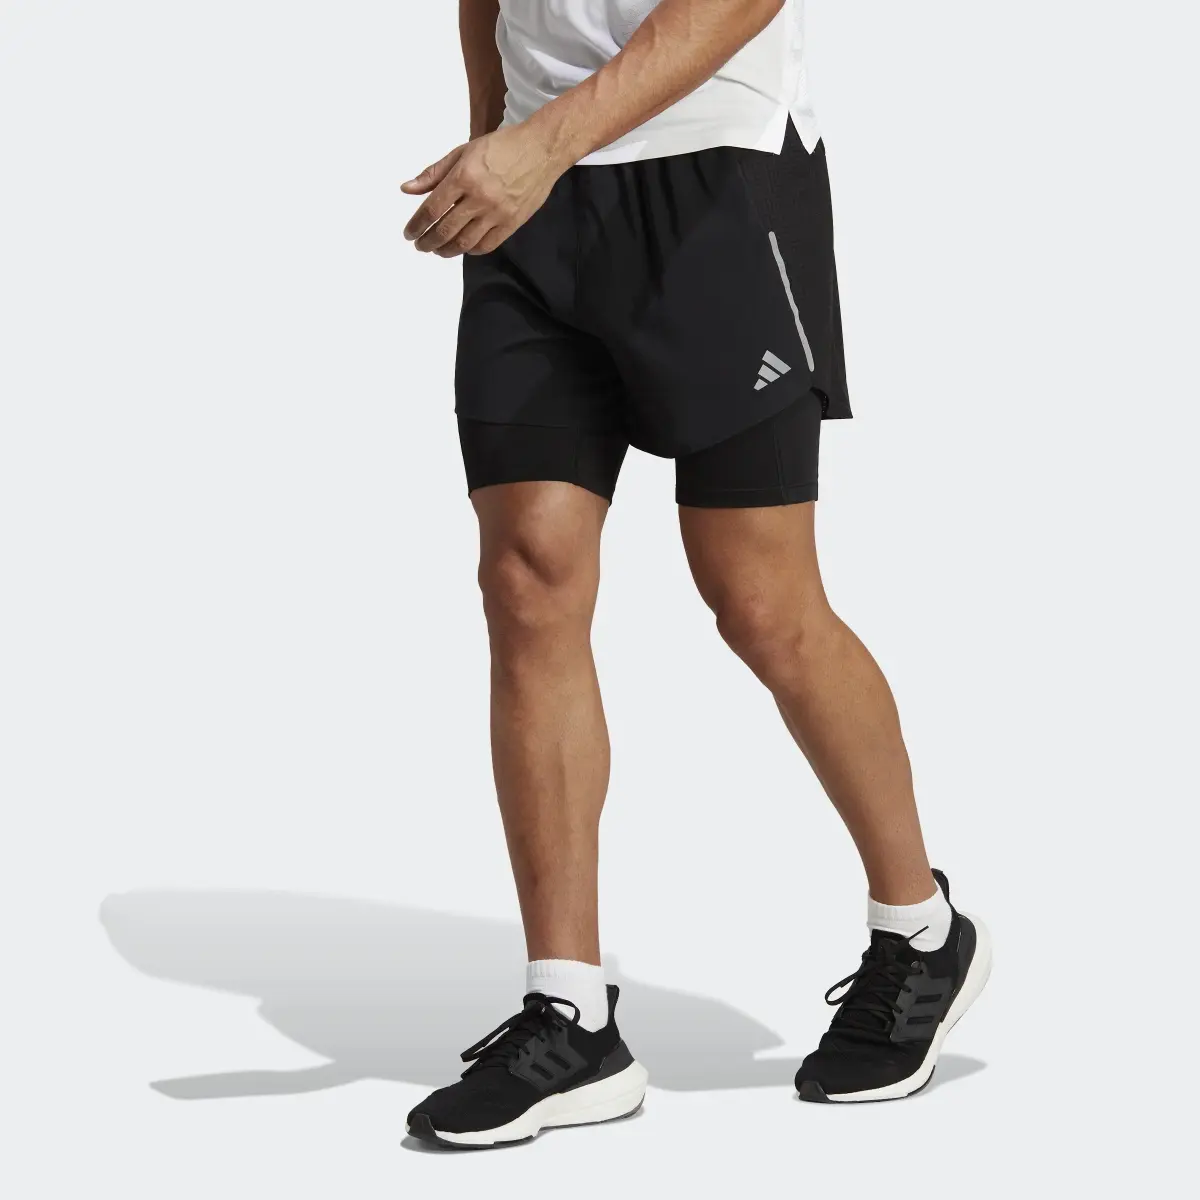 Adidas Short Designed 4 Running 2-in-1. 1